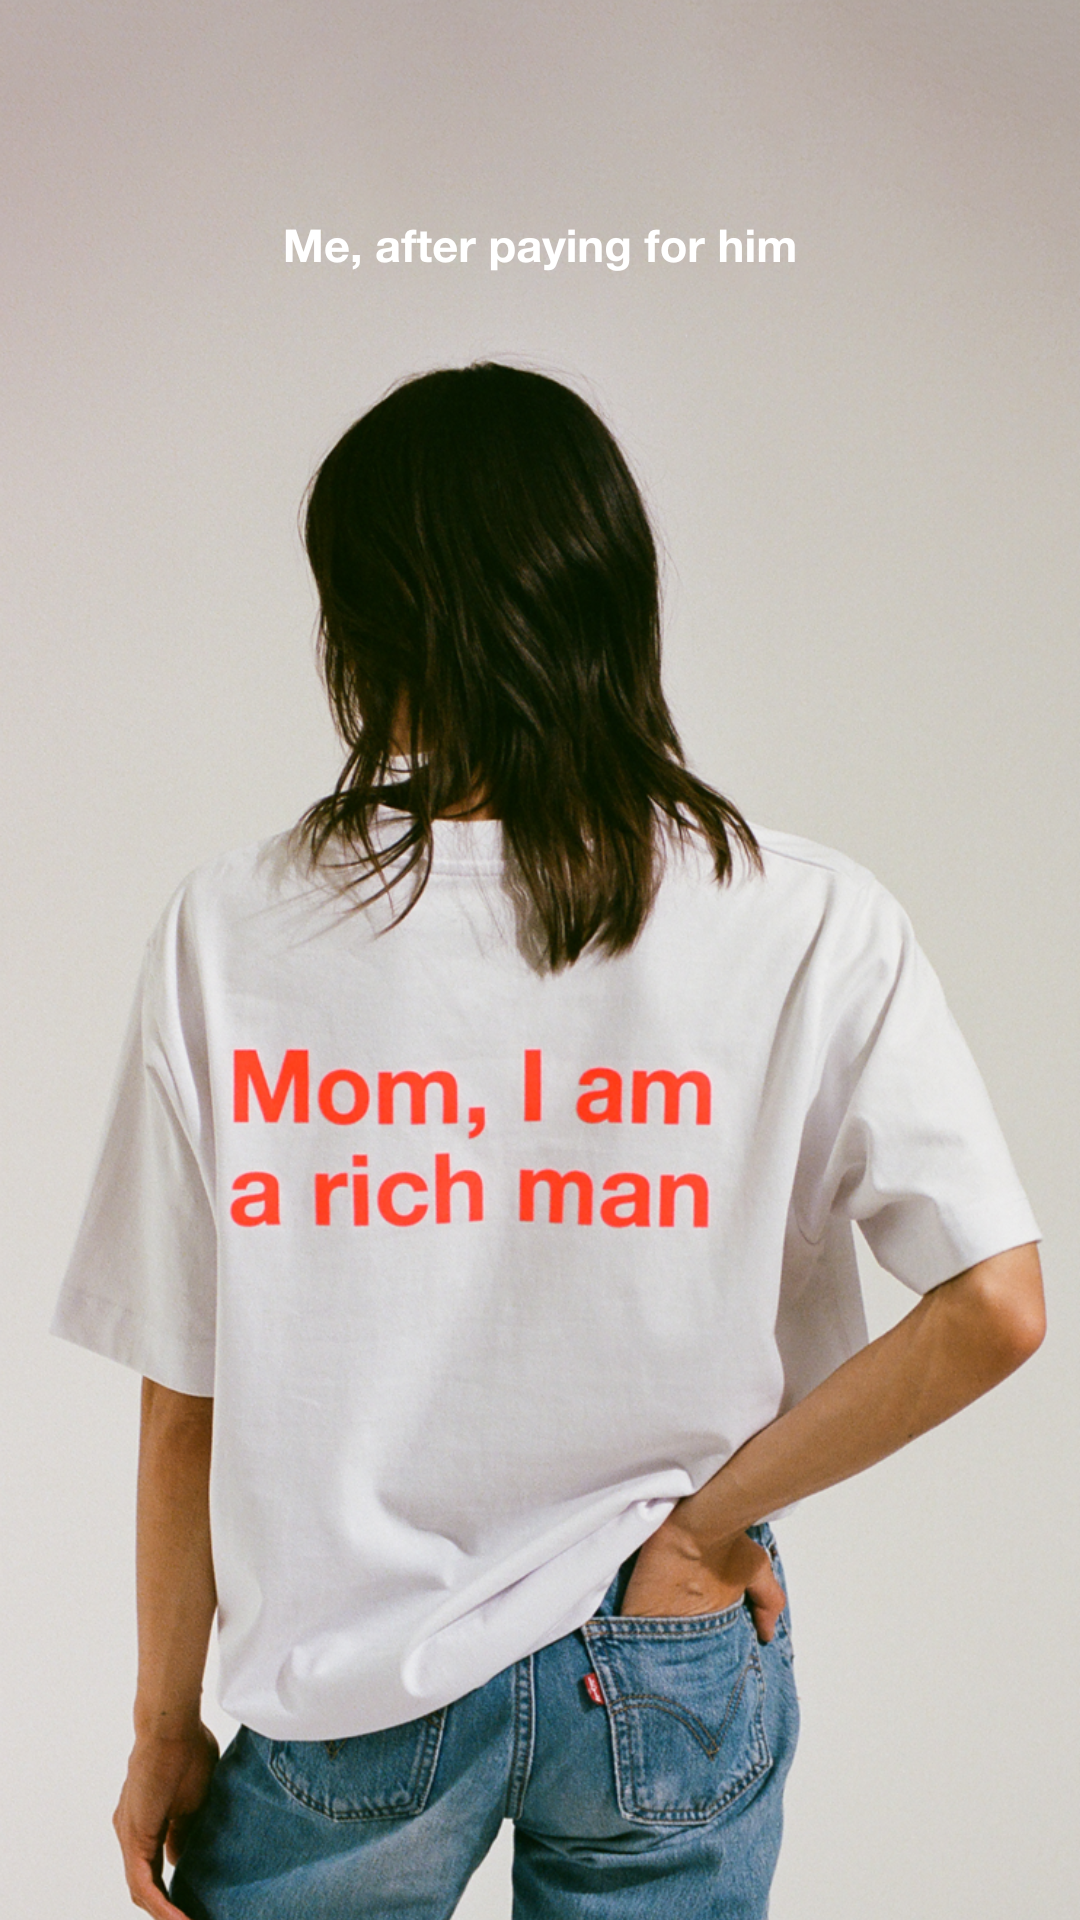 Mom, I am a rich man